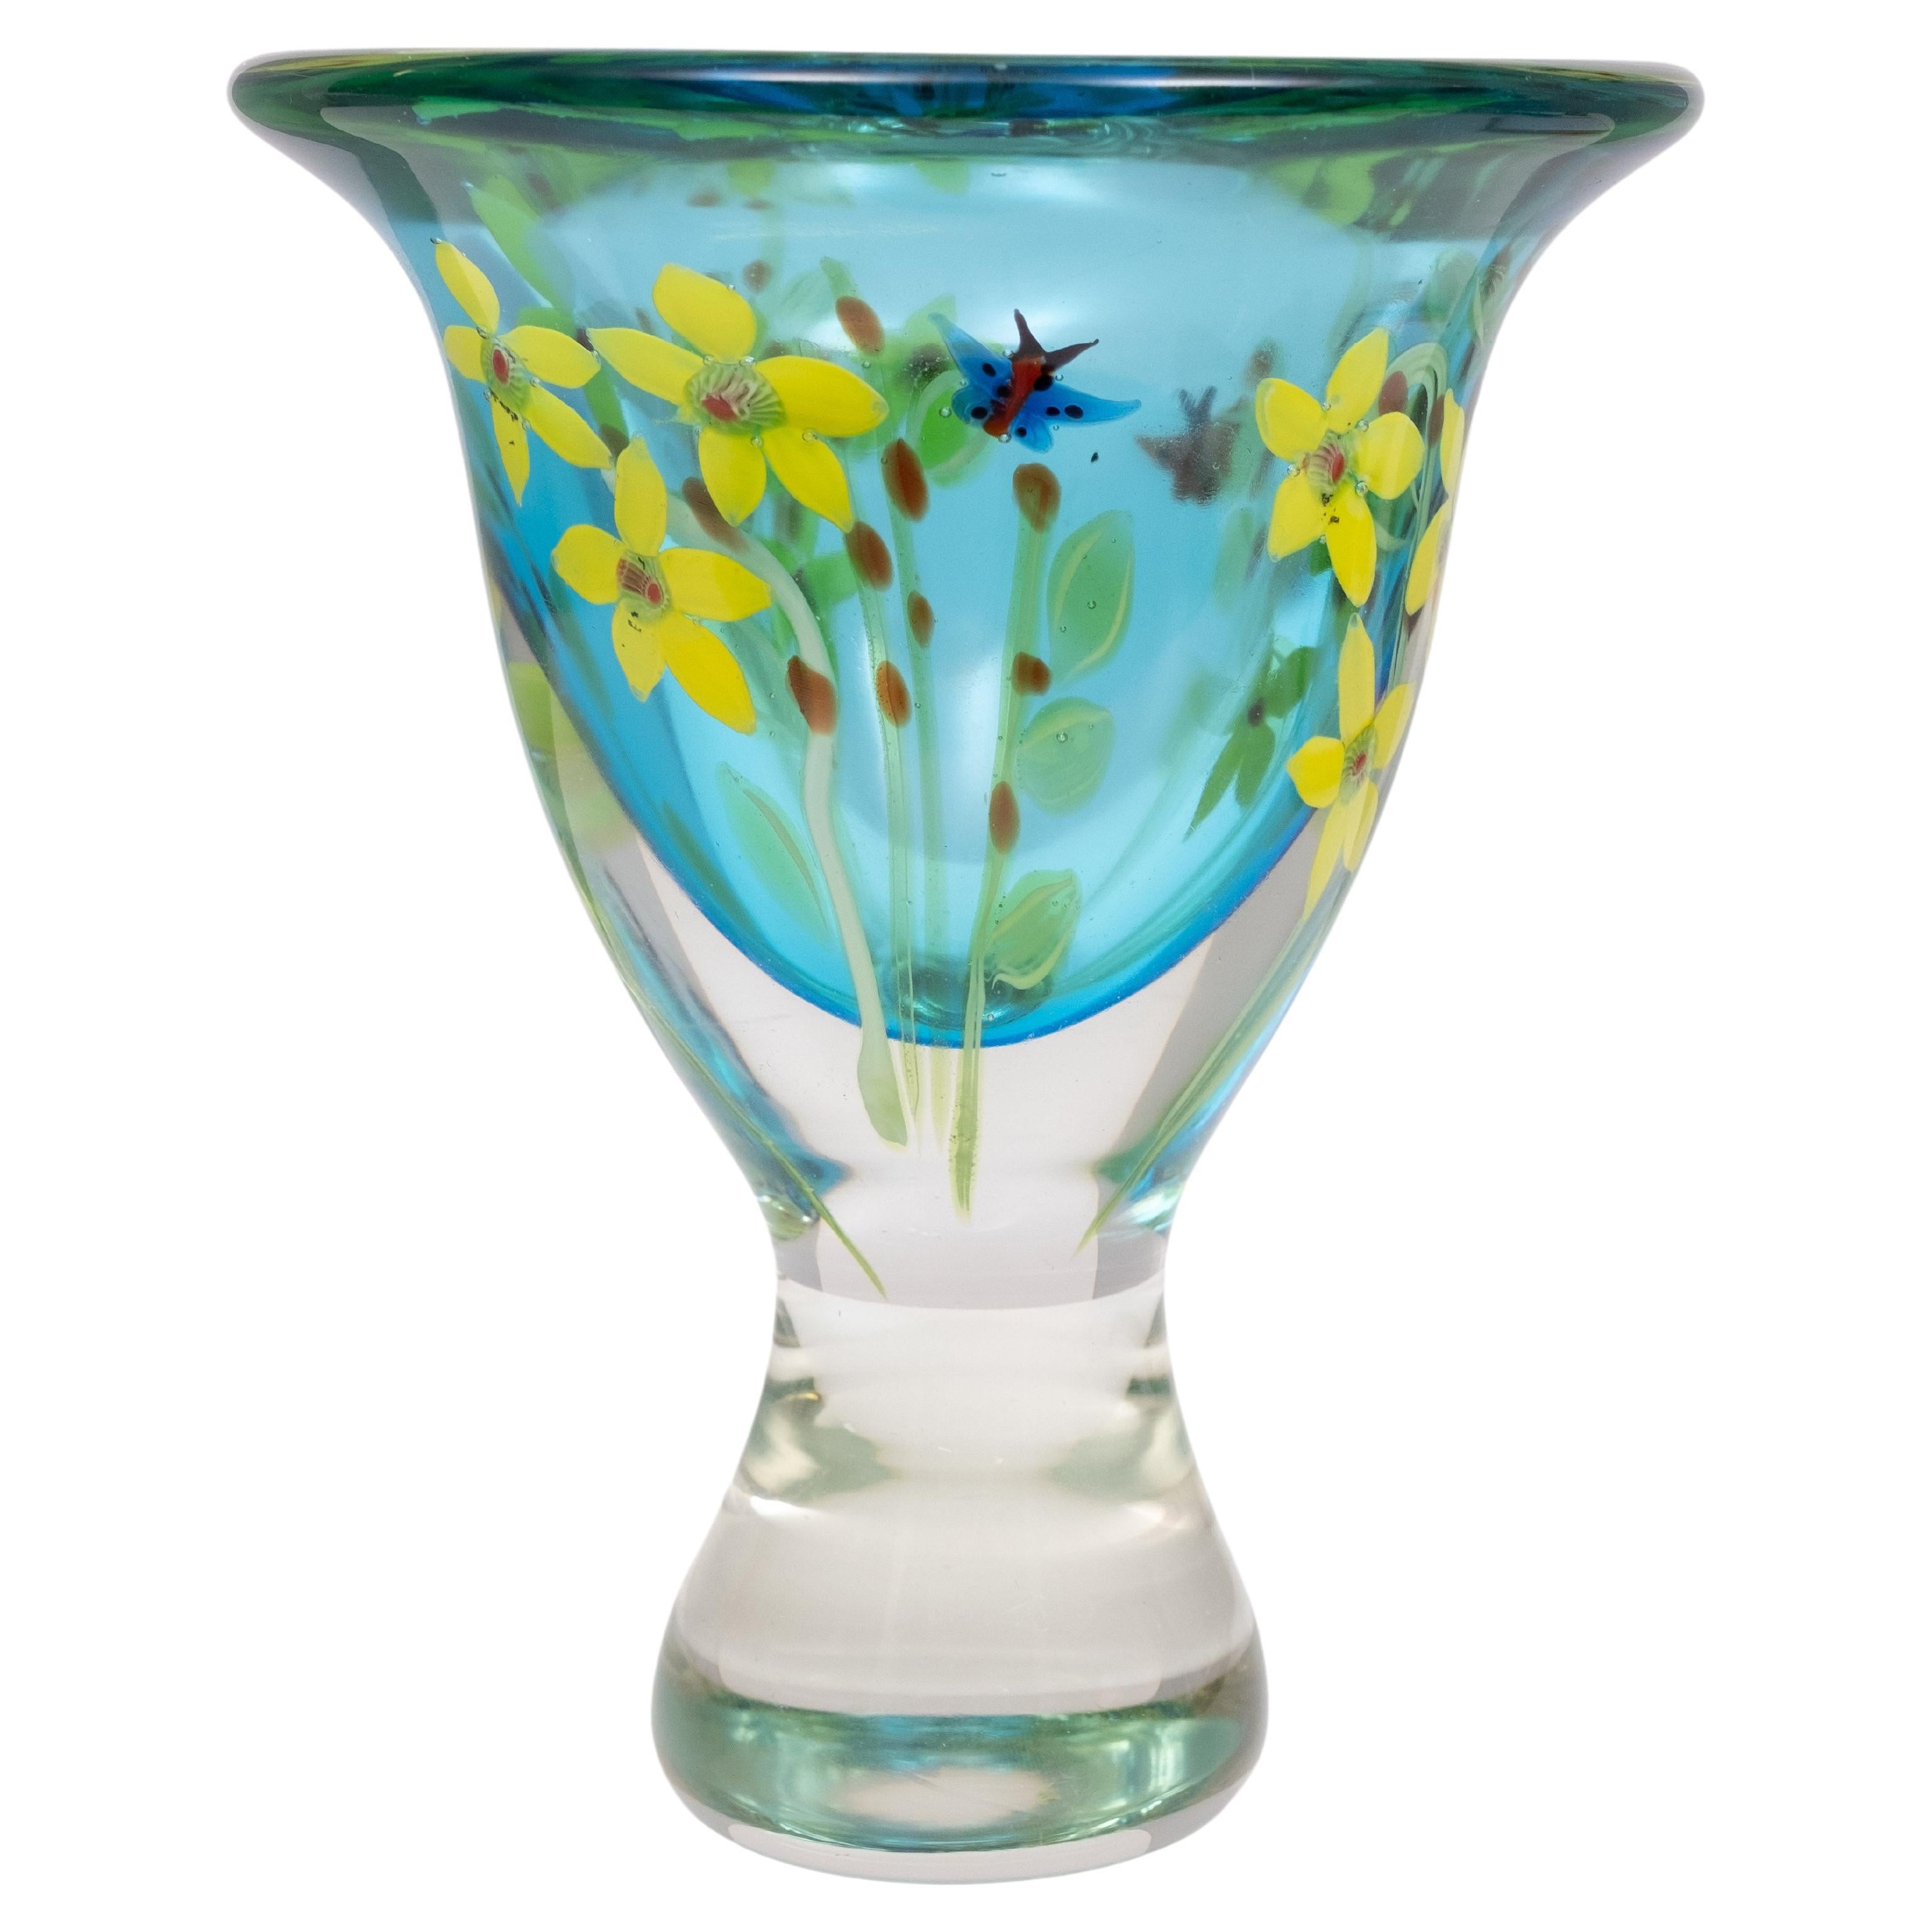 Berit Johansson Art Glass Vase by Murano 1970s Sweden  For Sale